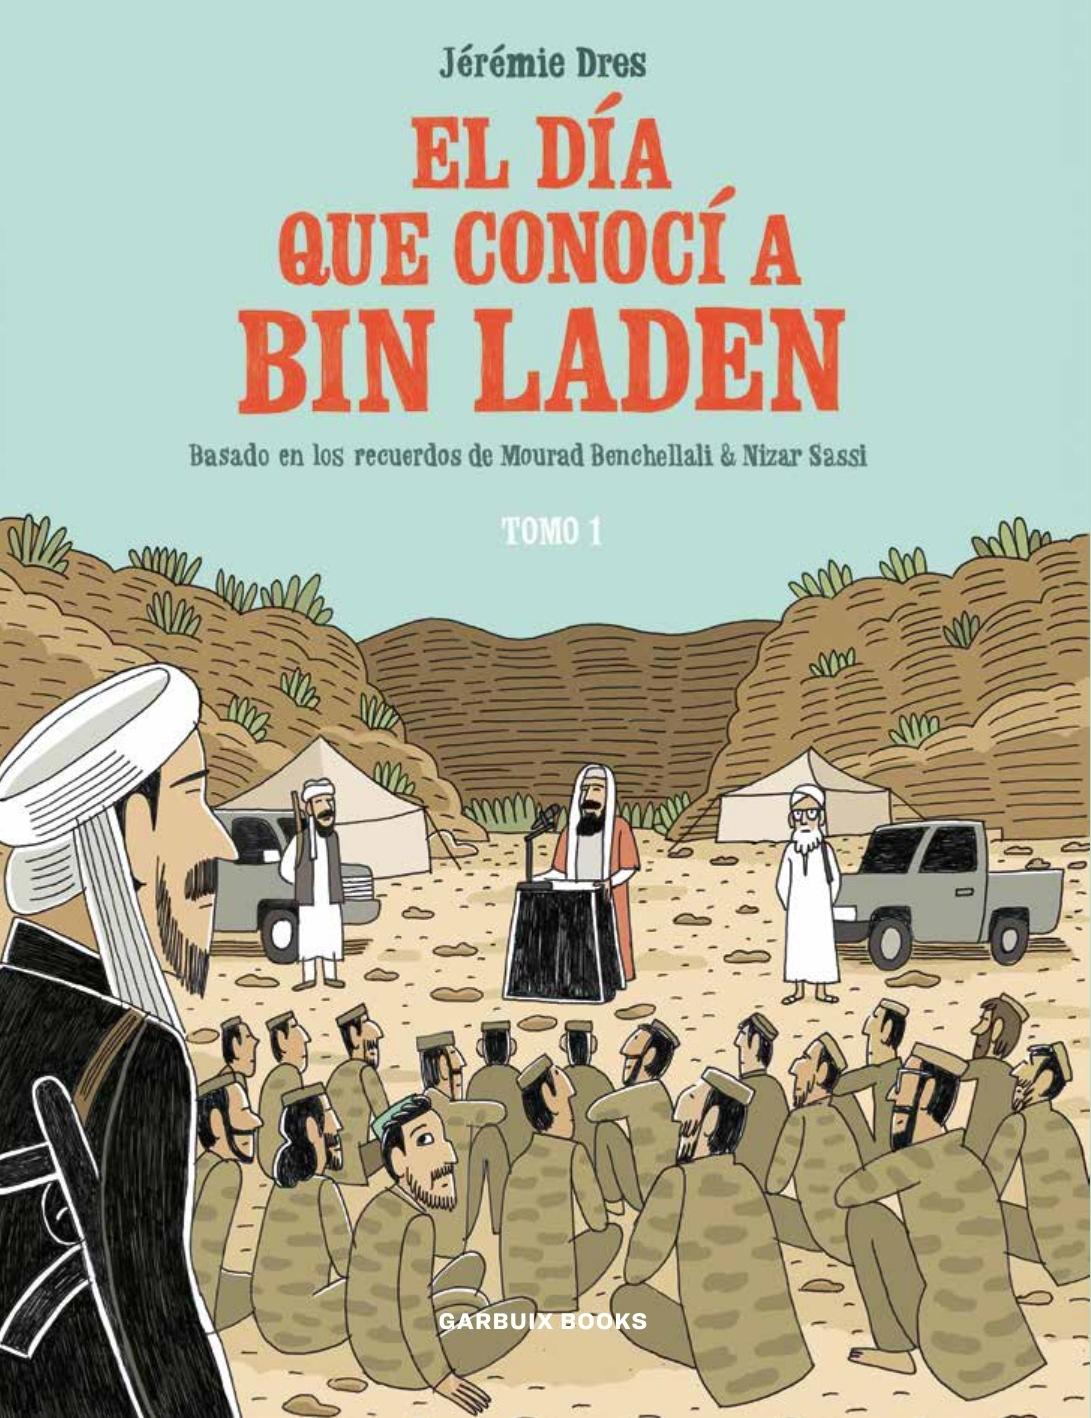 El Día que Conocí a Bin Laden "Basado en los Recuerdos de Mourad Benchellali & Nizar Sassi"